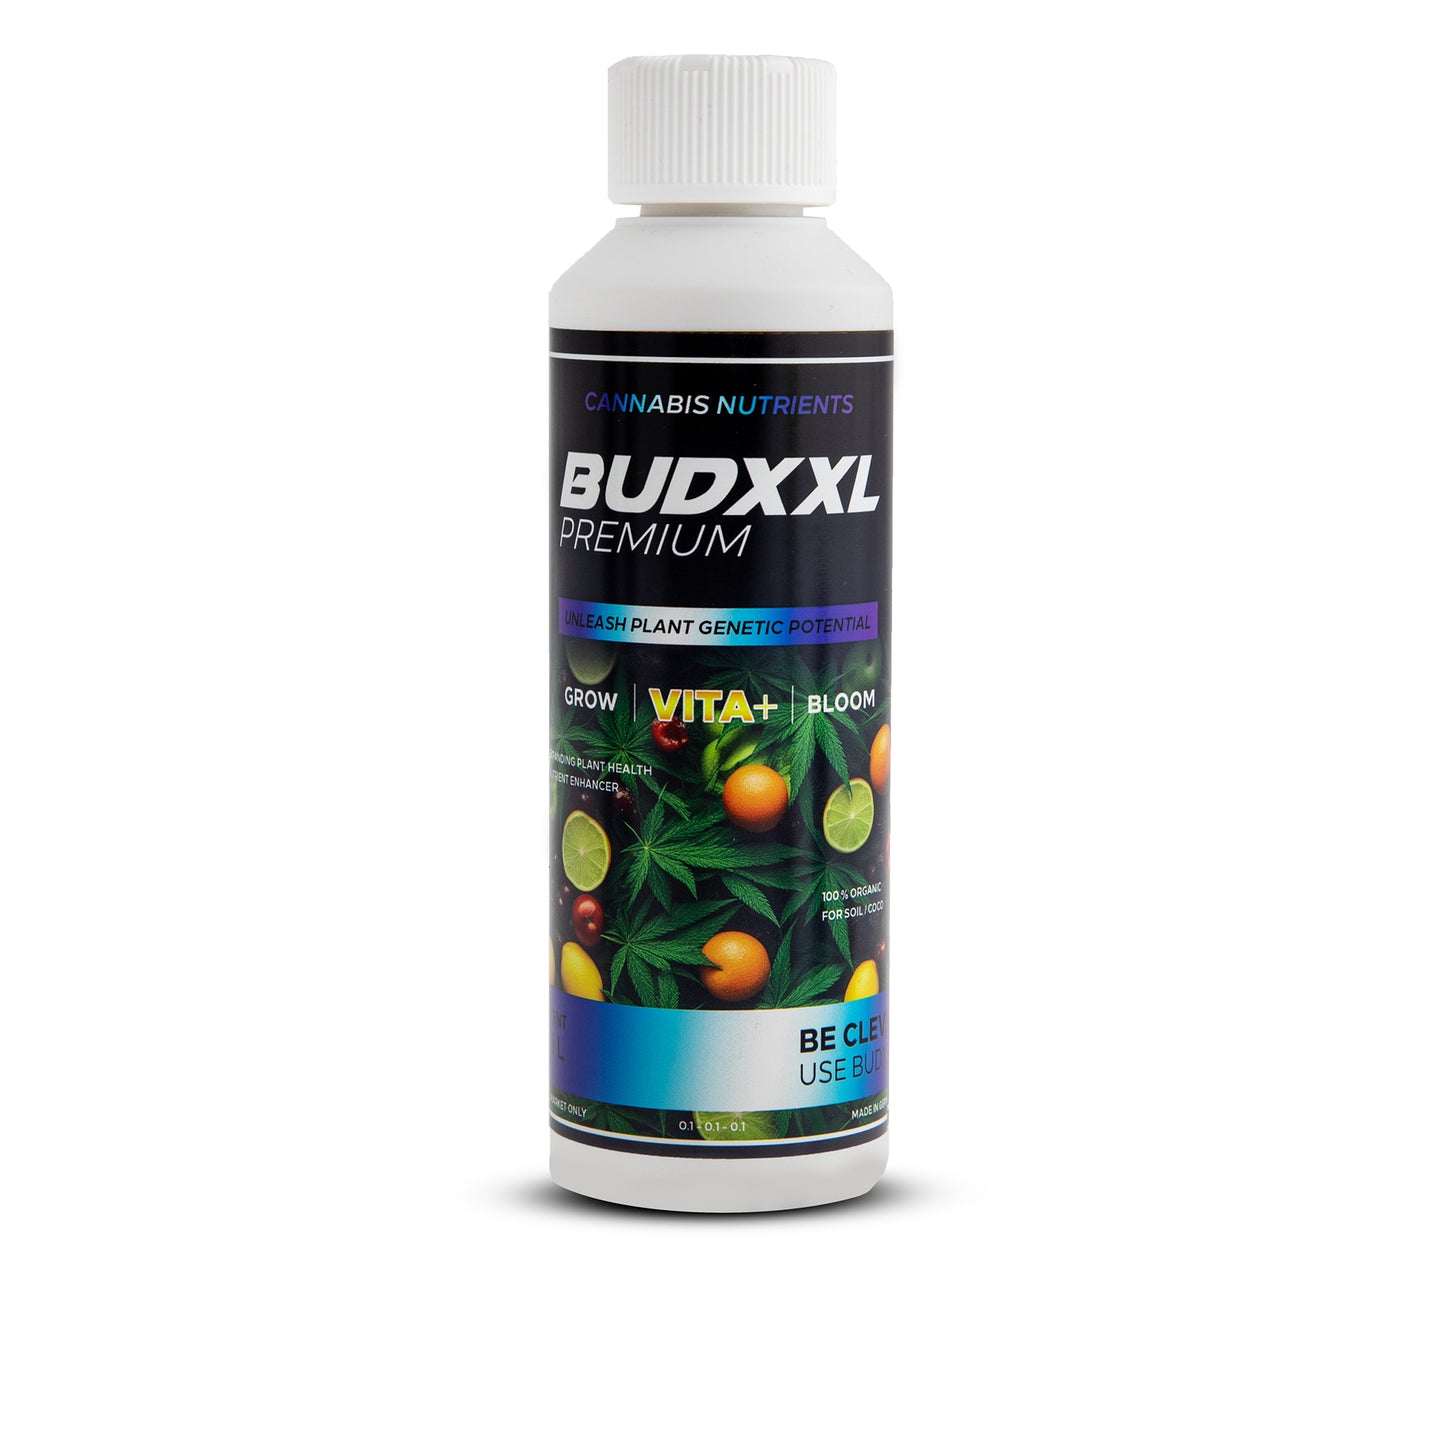 BUDXXL Vita+